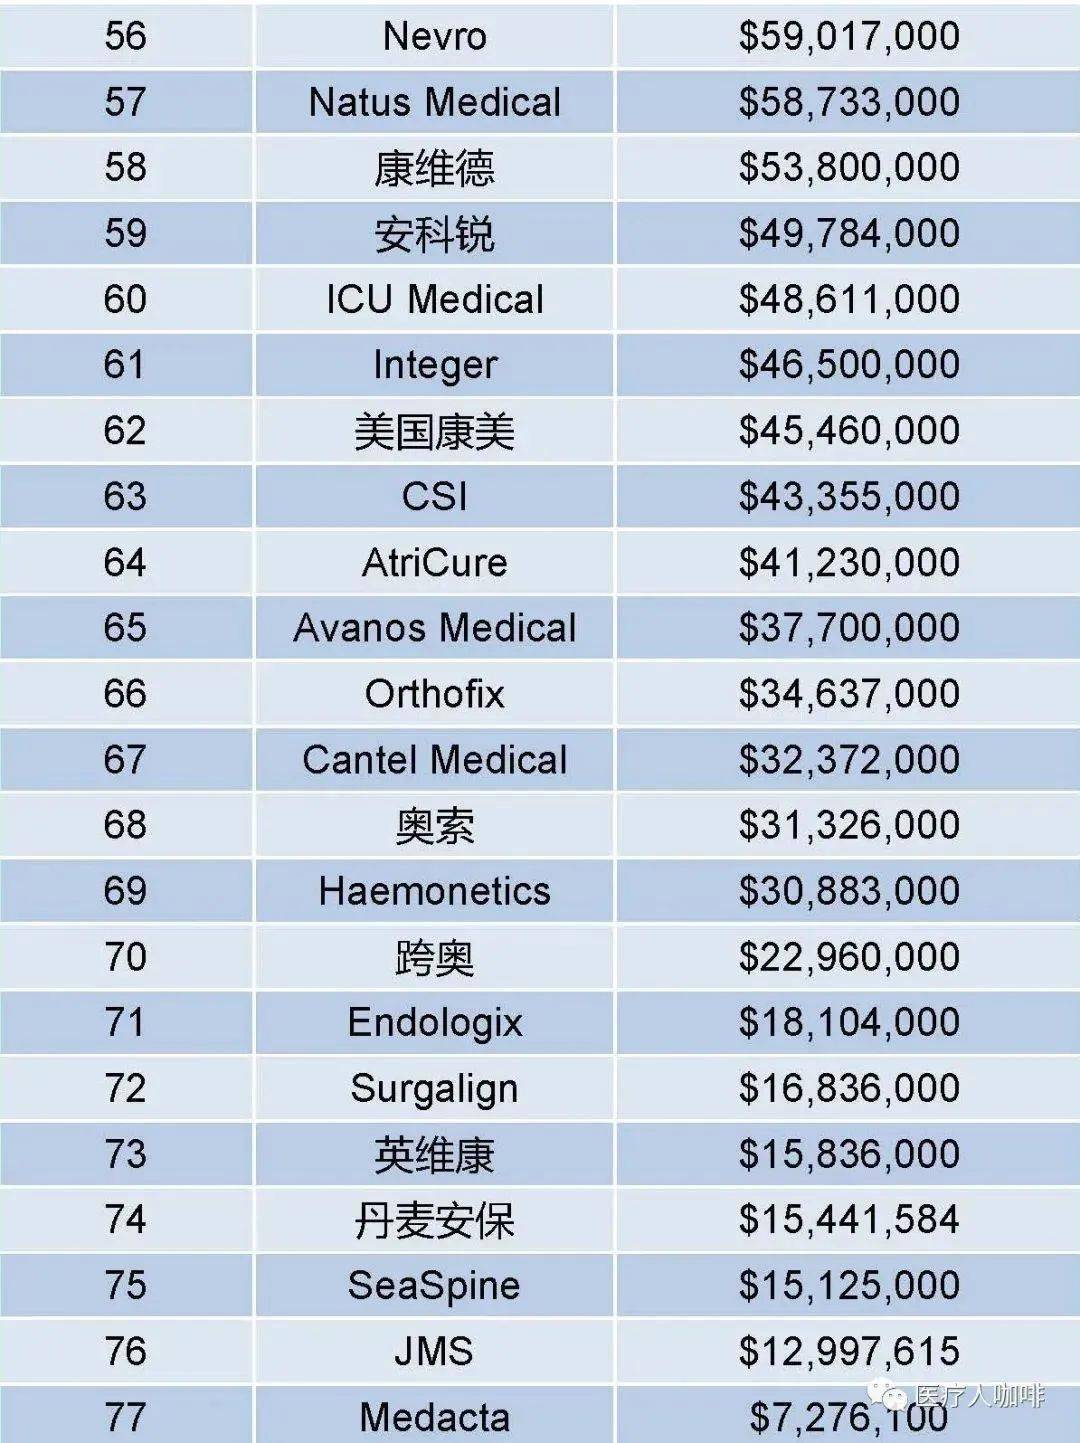 全球医疗器械公司研发排行榜,中国企业无一入榜